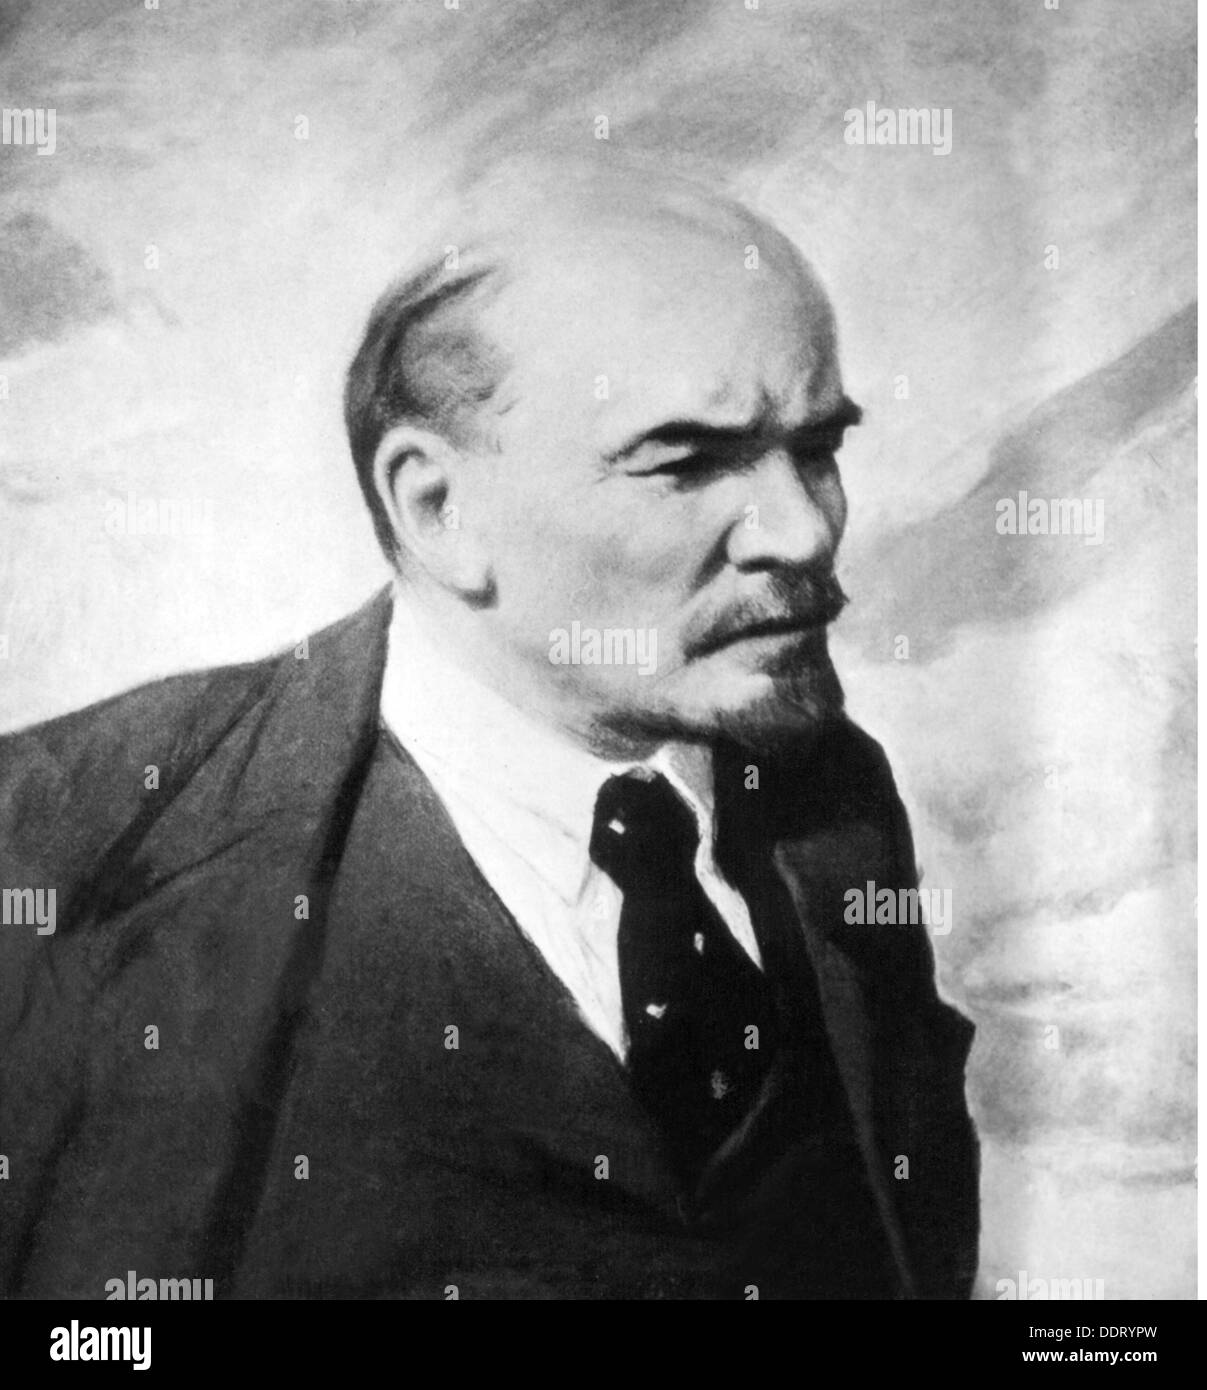 Lenin (Vladimir Ilich Ulyanov), 22.4.1870 - 21.1.1924, político ruso, retrato, después de pintar por Vladimir Alexandrovich Serov (1910 - 1968), detalle del siglo XX, el Copyright del artista no ha de ser borrado Foto de stock